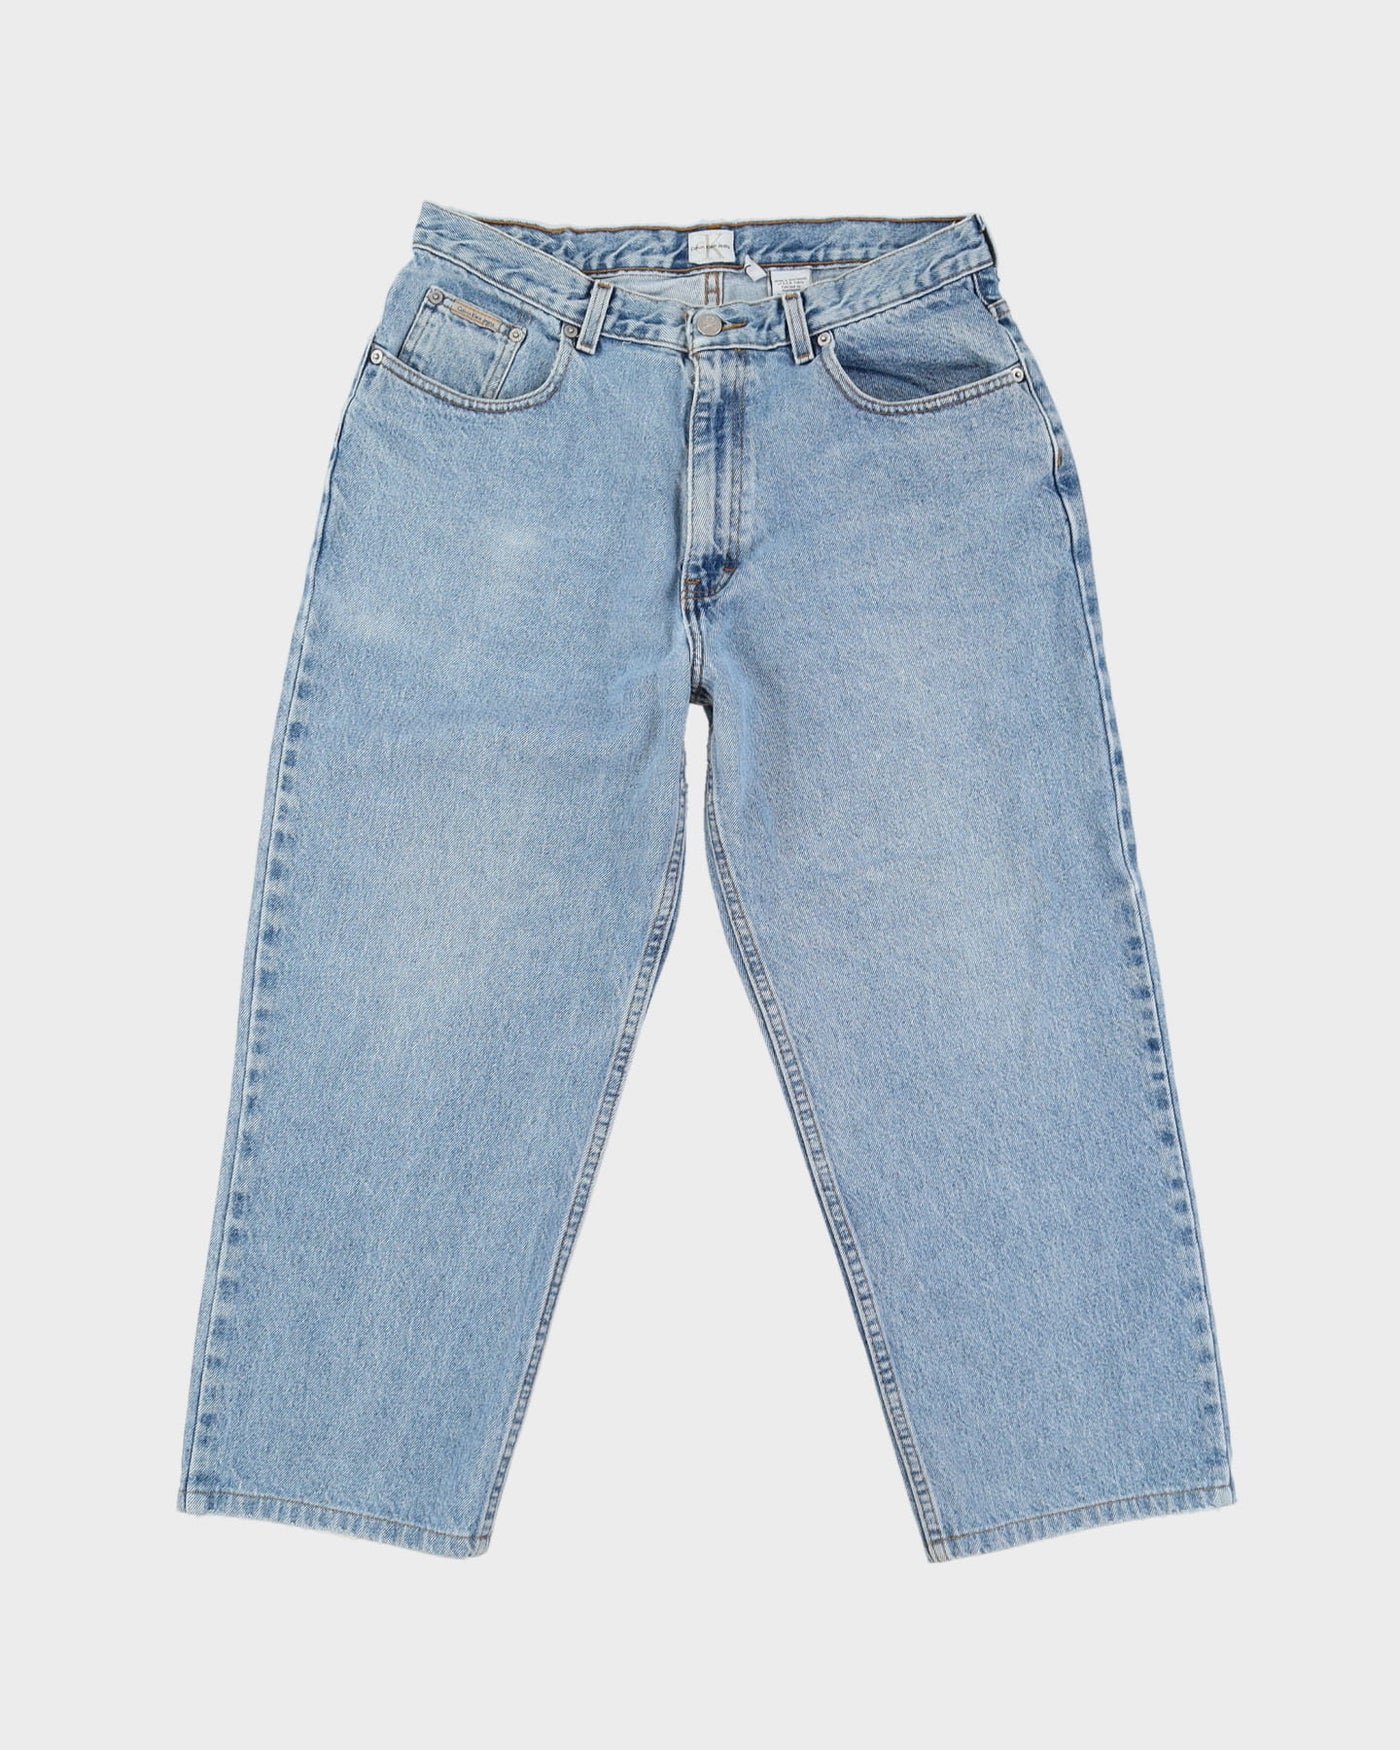 90s Calvin Klein Light Wash Blue Jeans - W32 L25